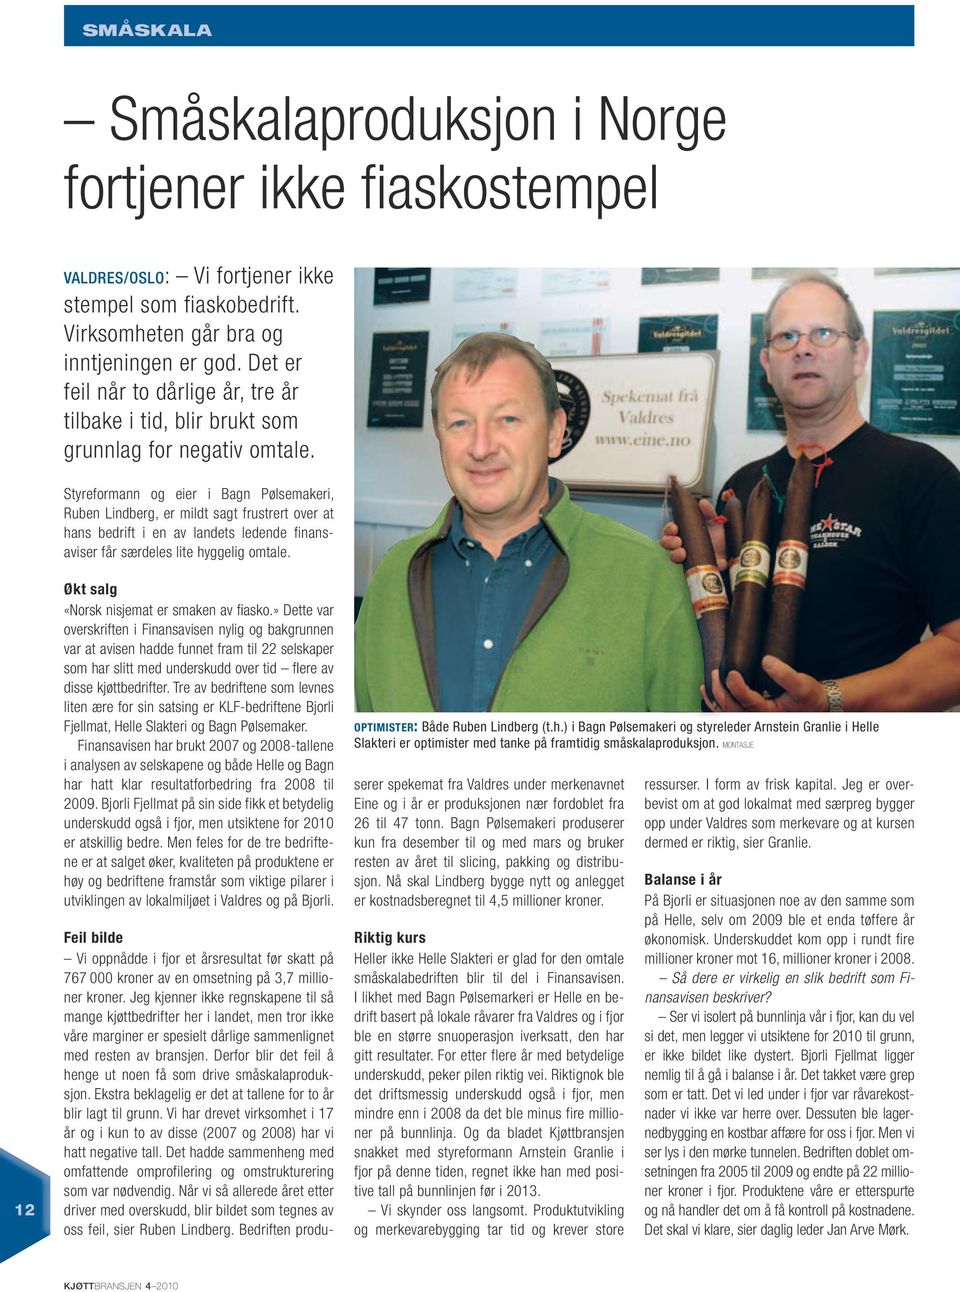 Styreformann eier i Bagn Pølsemakeri, Ruben Lindberg, er mildt sagt frustrert over at hans bedrift i en av landets ledende finansaviser får særdeles lite hyggelig omtale.